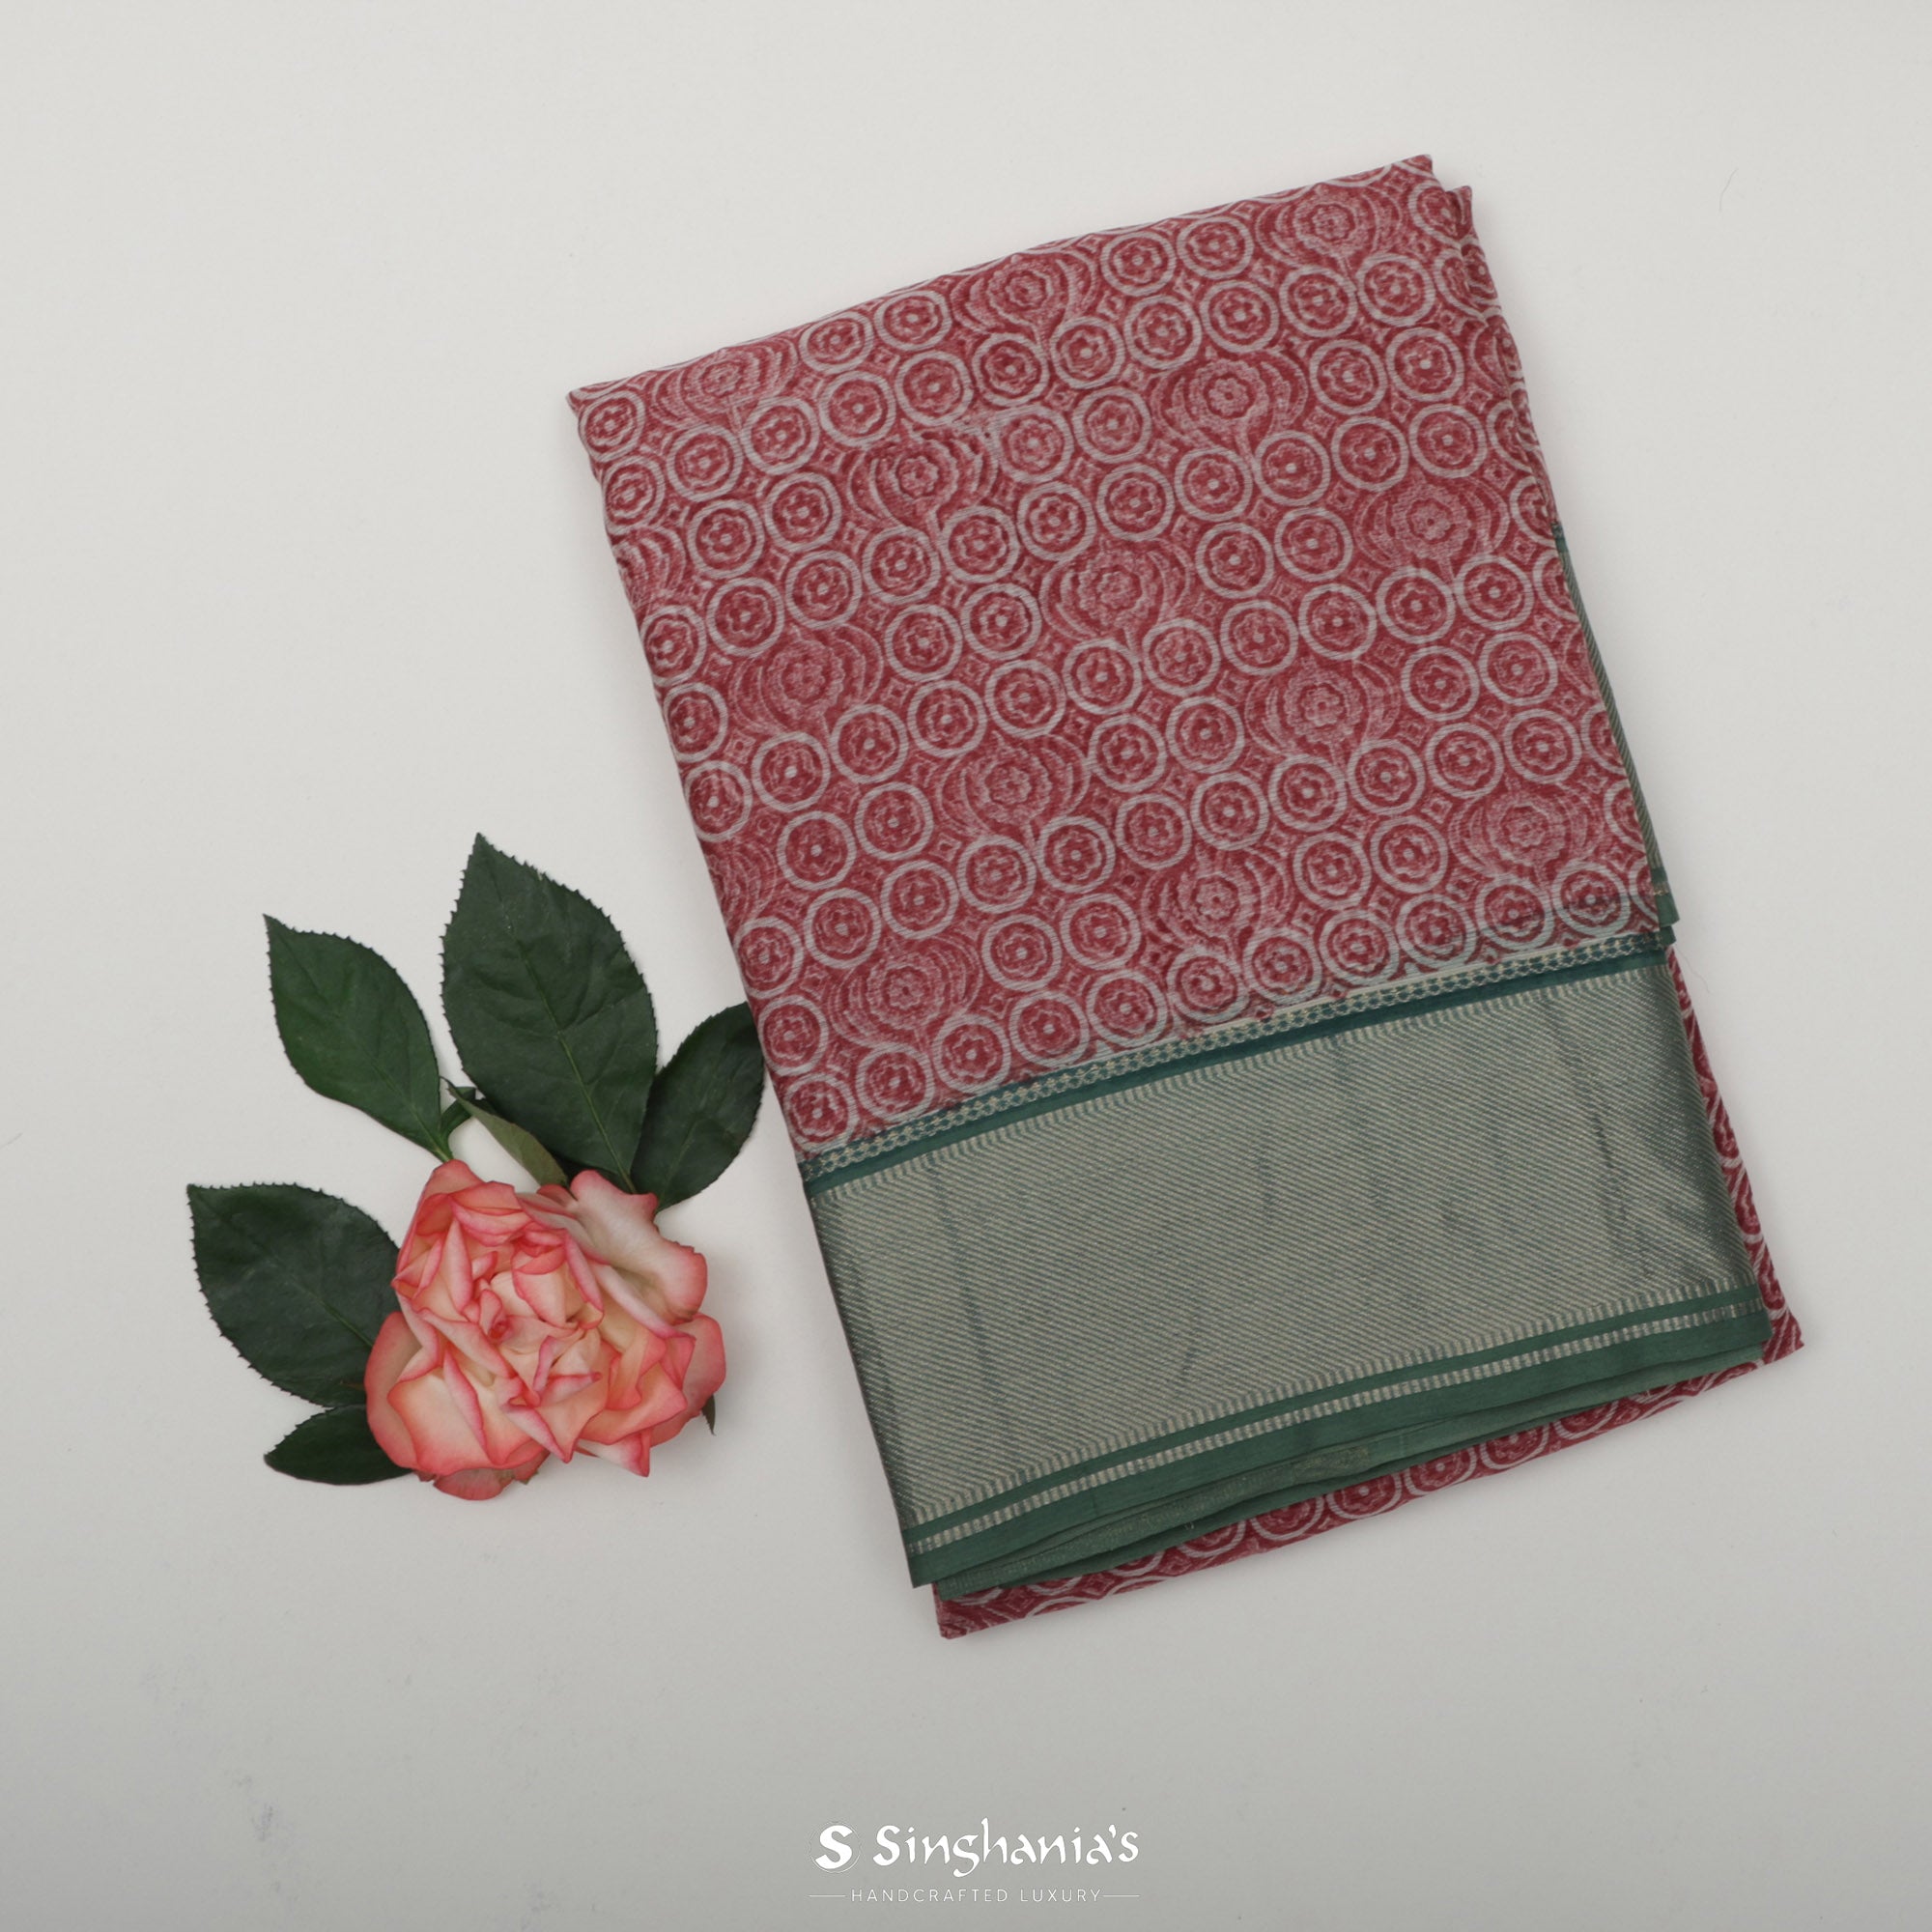 Rose Red Printed Maheshwari Silk Saree With Floral Motif Pattern